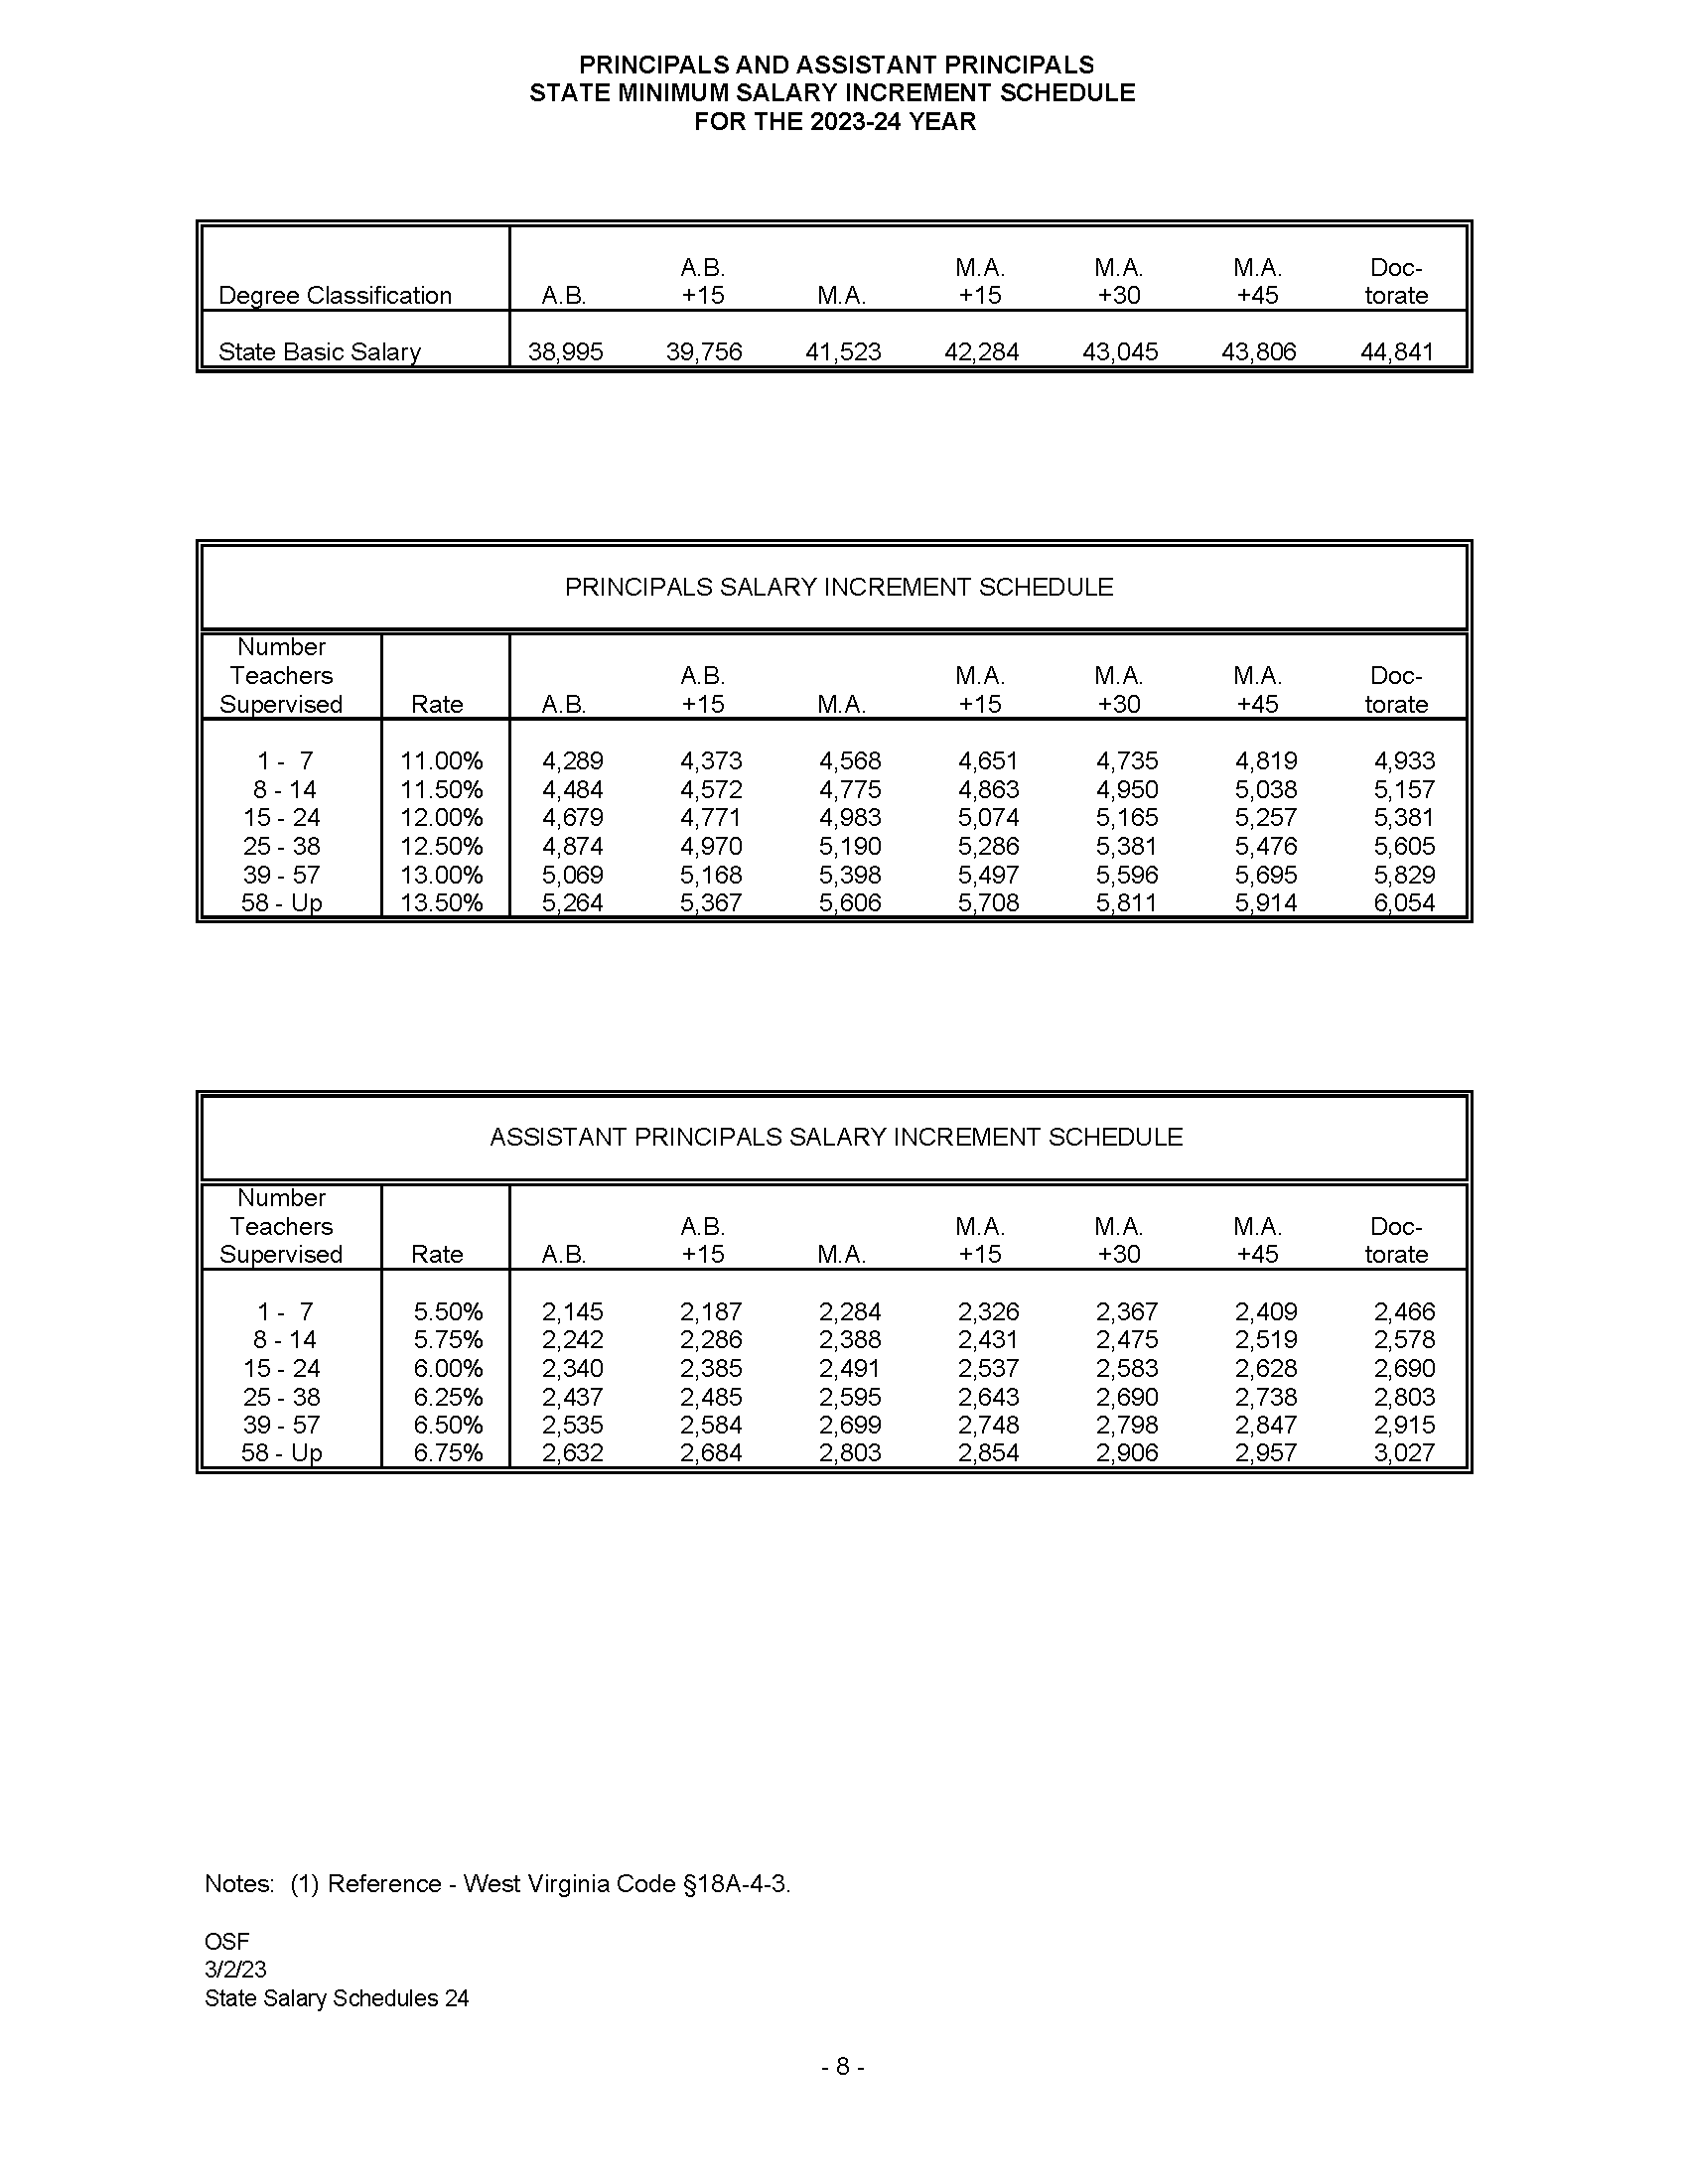 Principal Salary Schedules